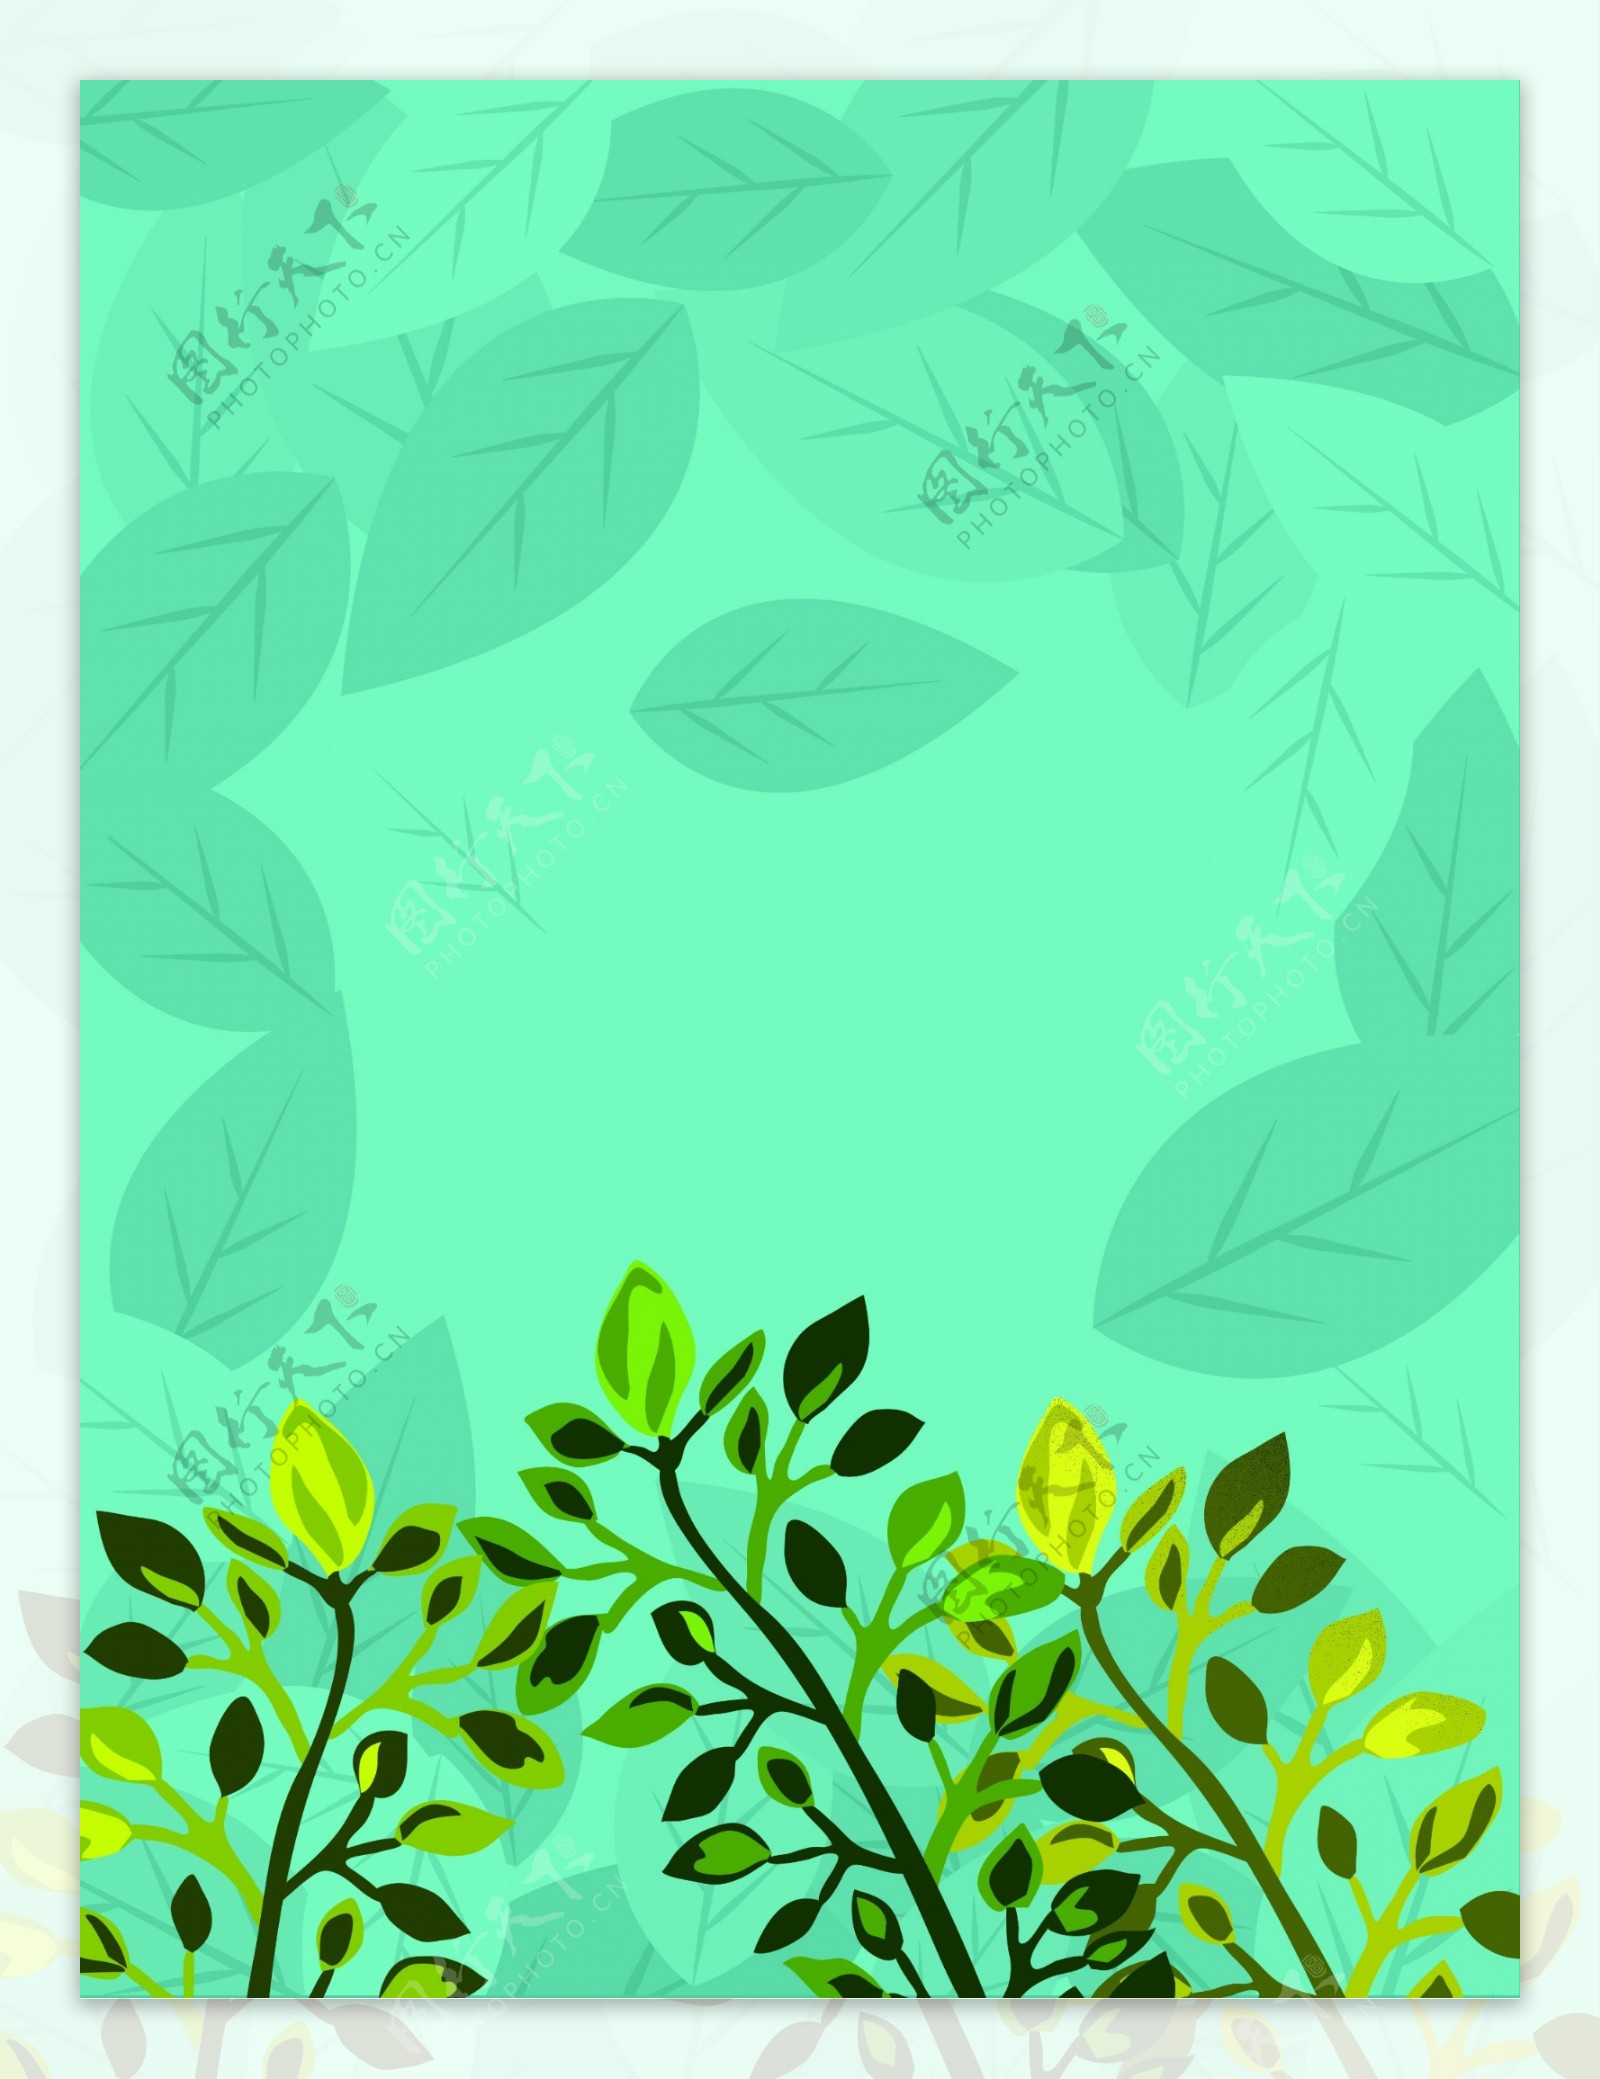 世界环境日绿色植物手绘背景